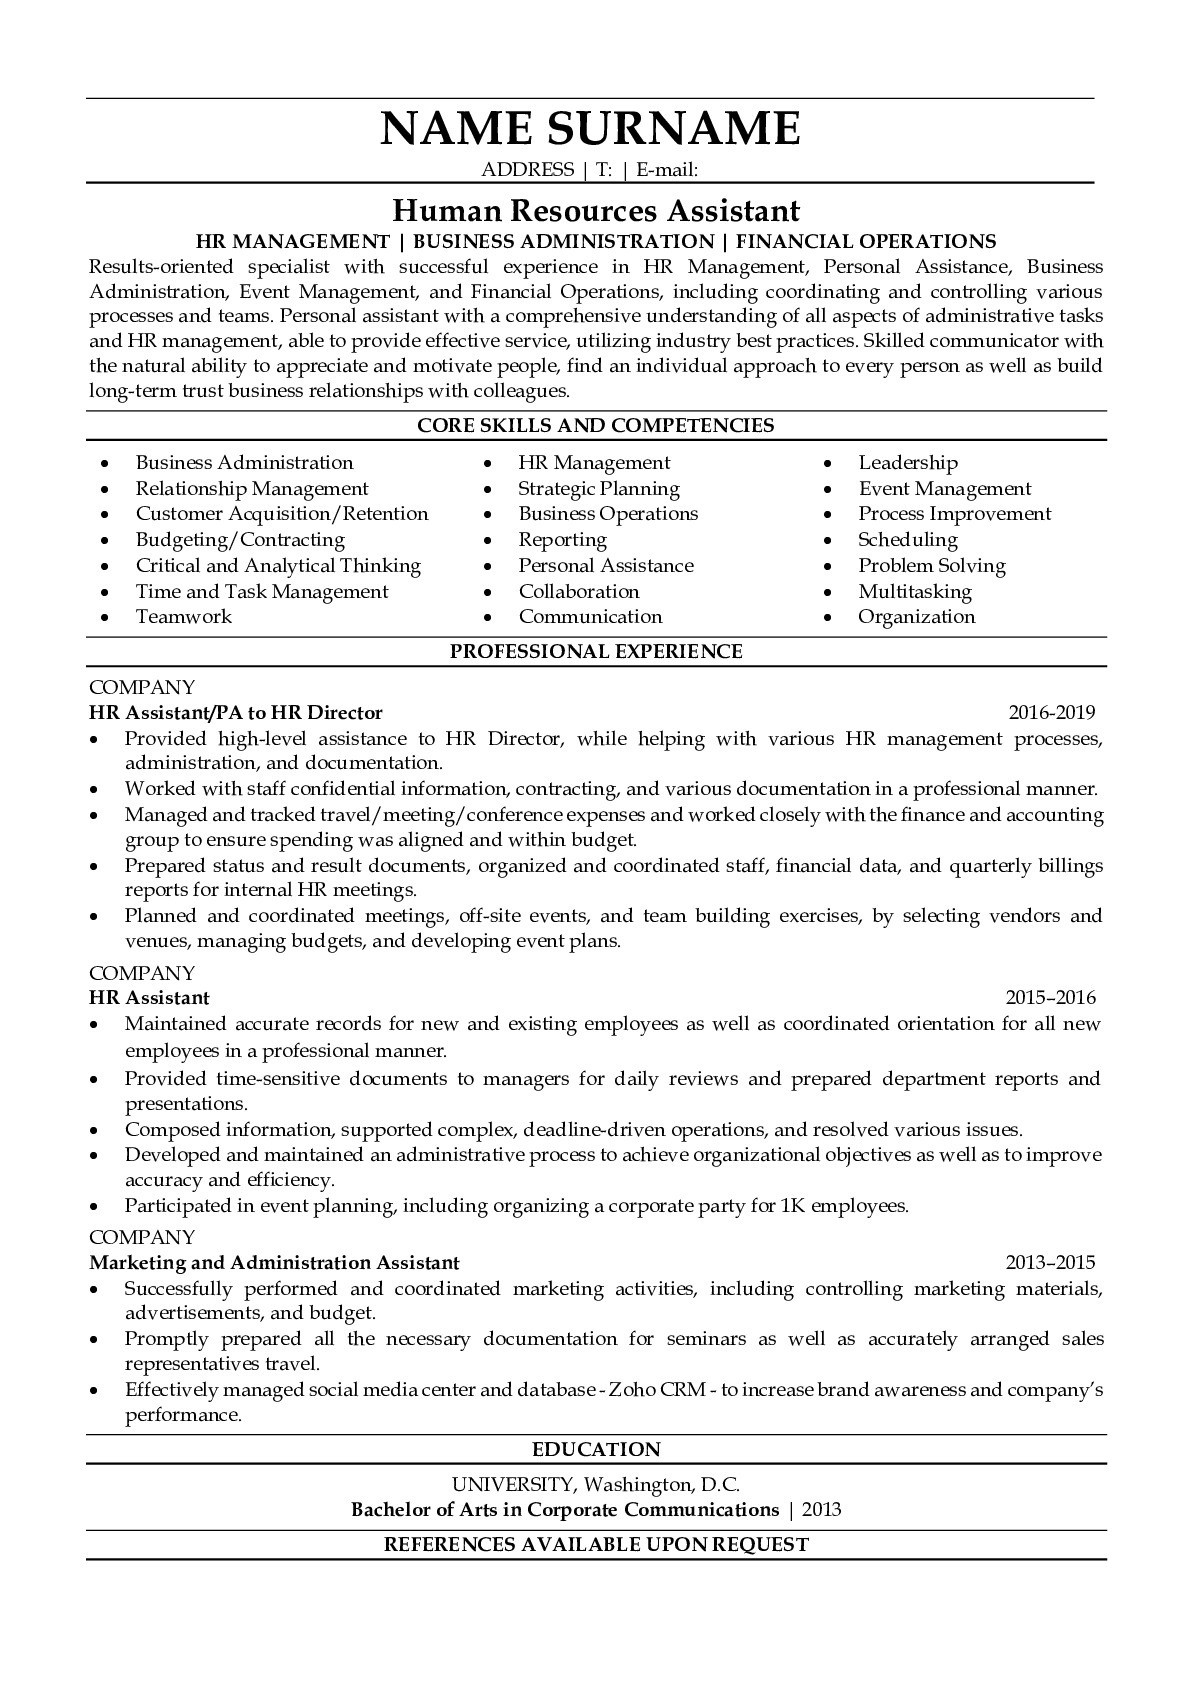 Sample Resume Administrative assistant Human Resources Professional Human Resources assistant Resume Sample Resumegets.com